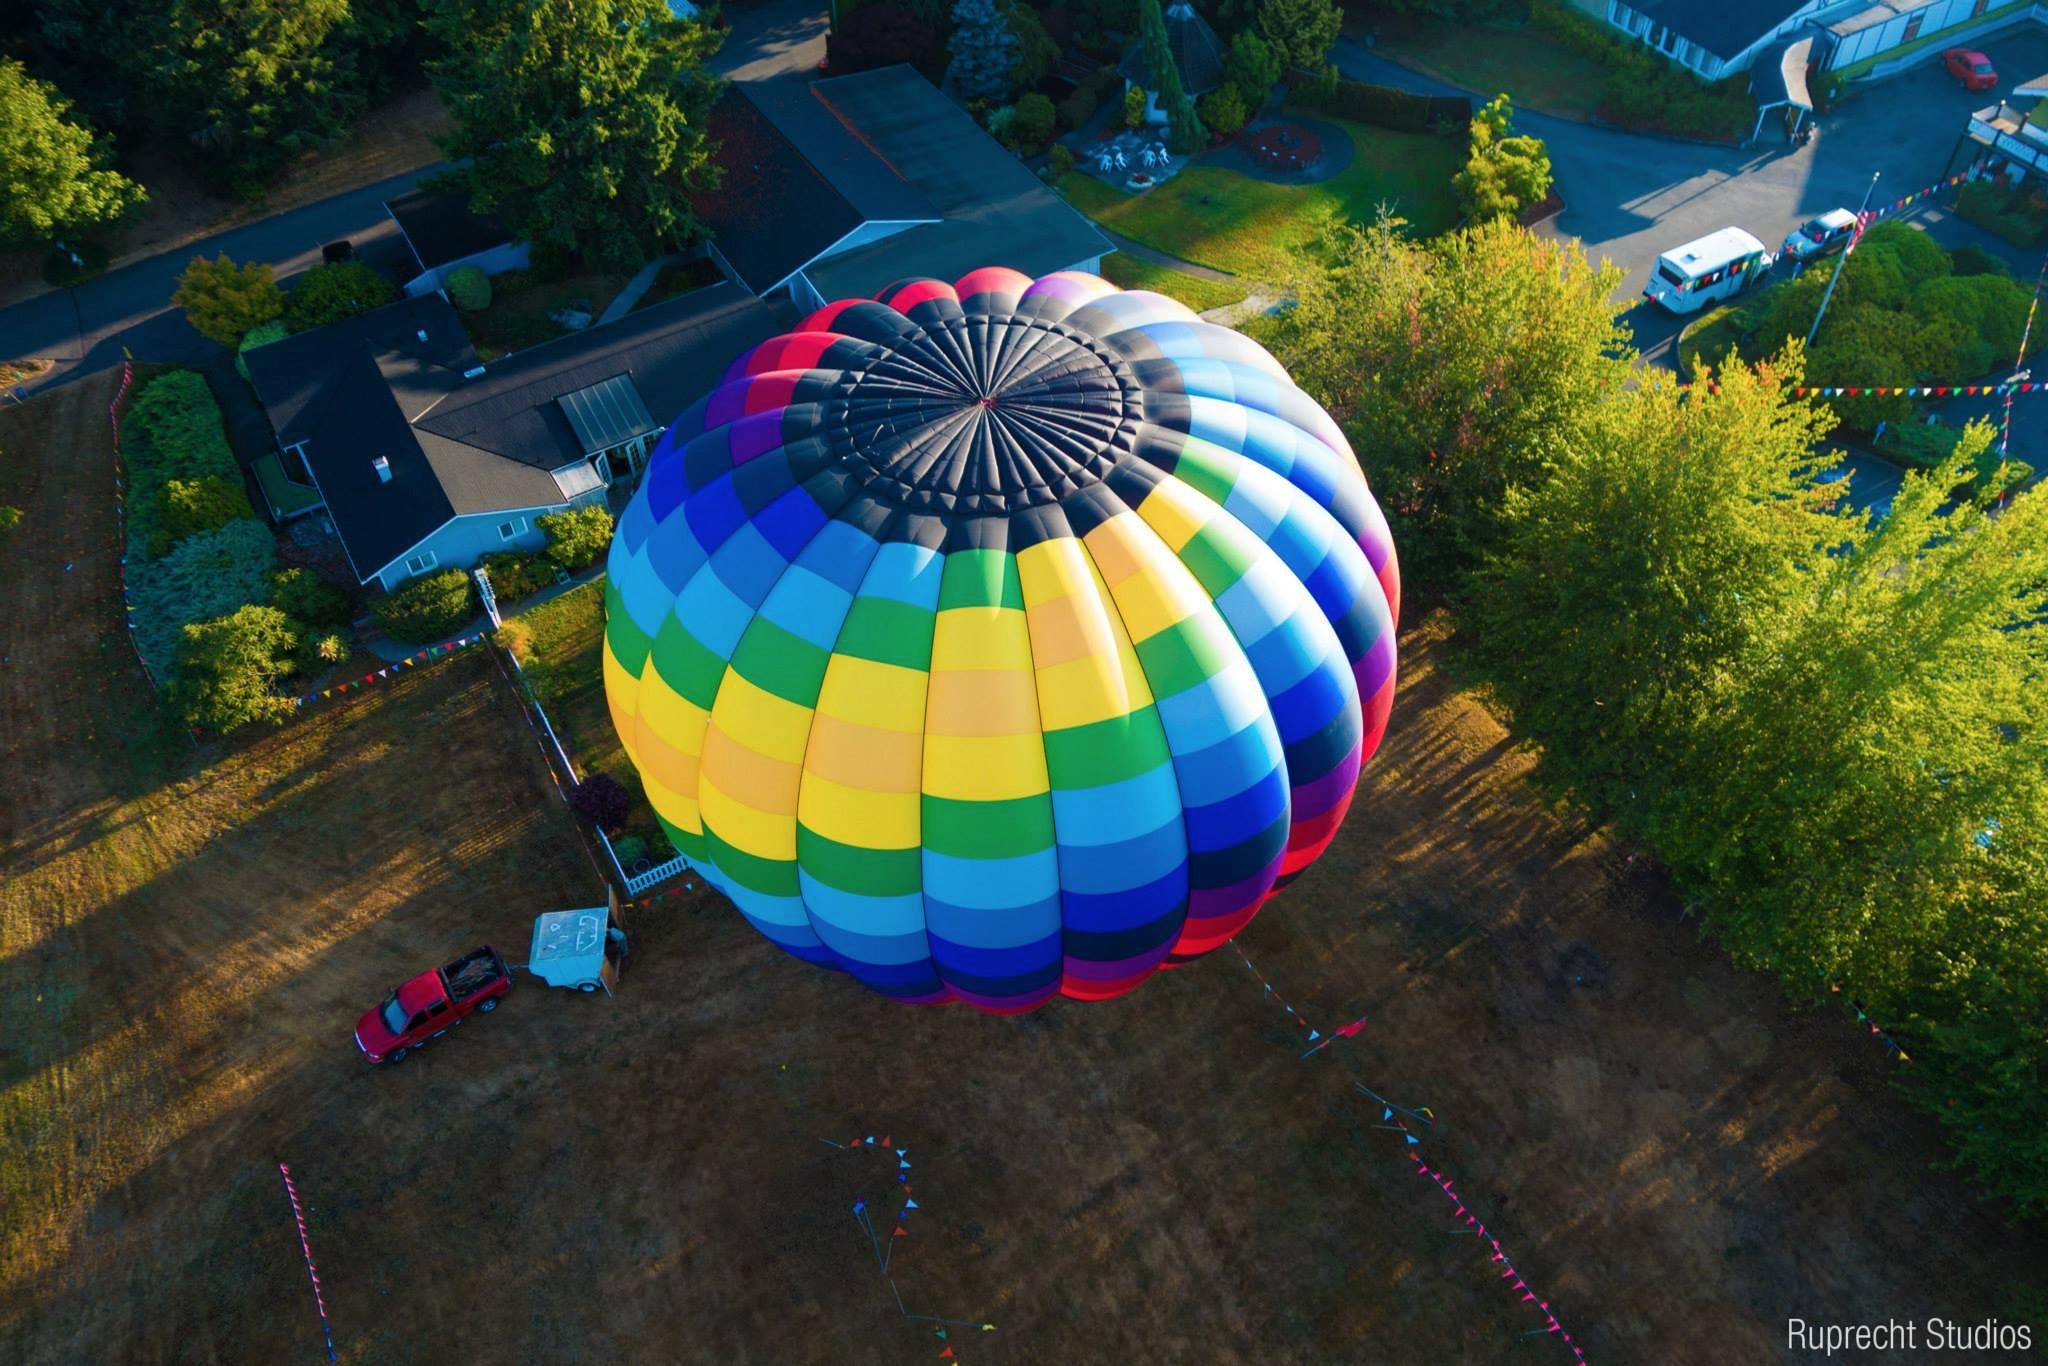 Seattle Ballooning